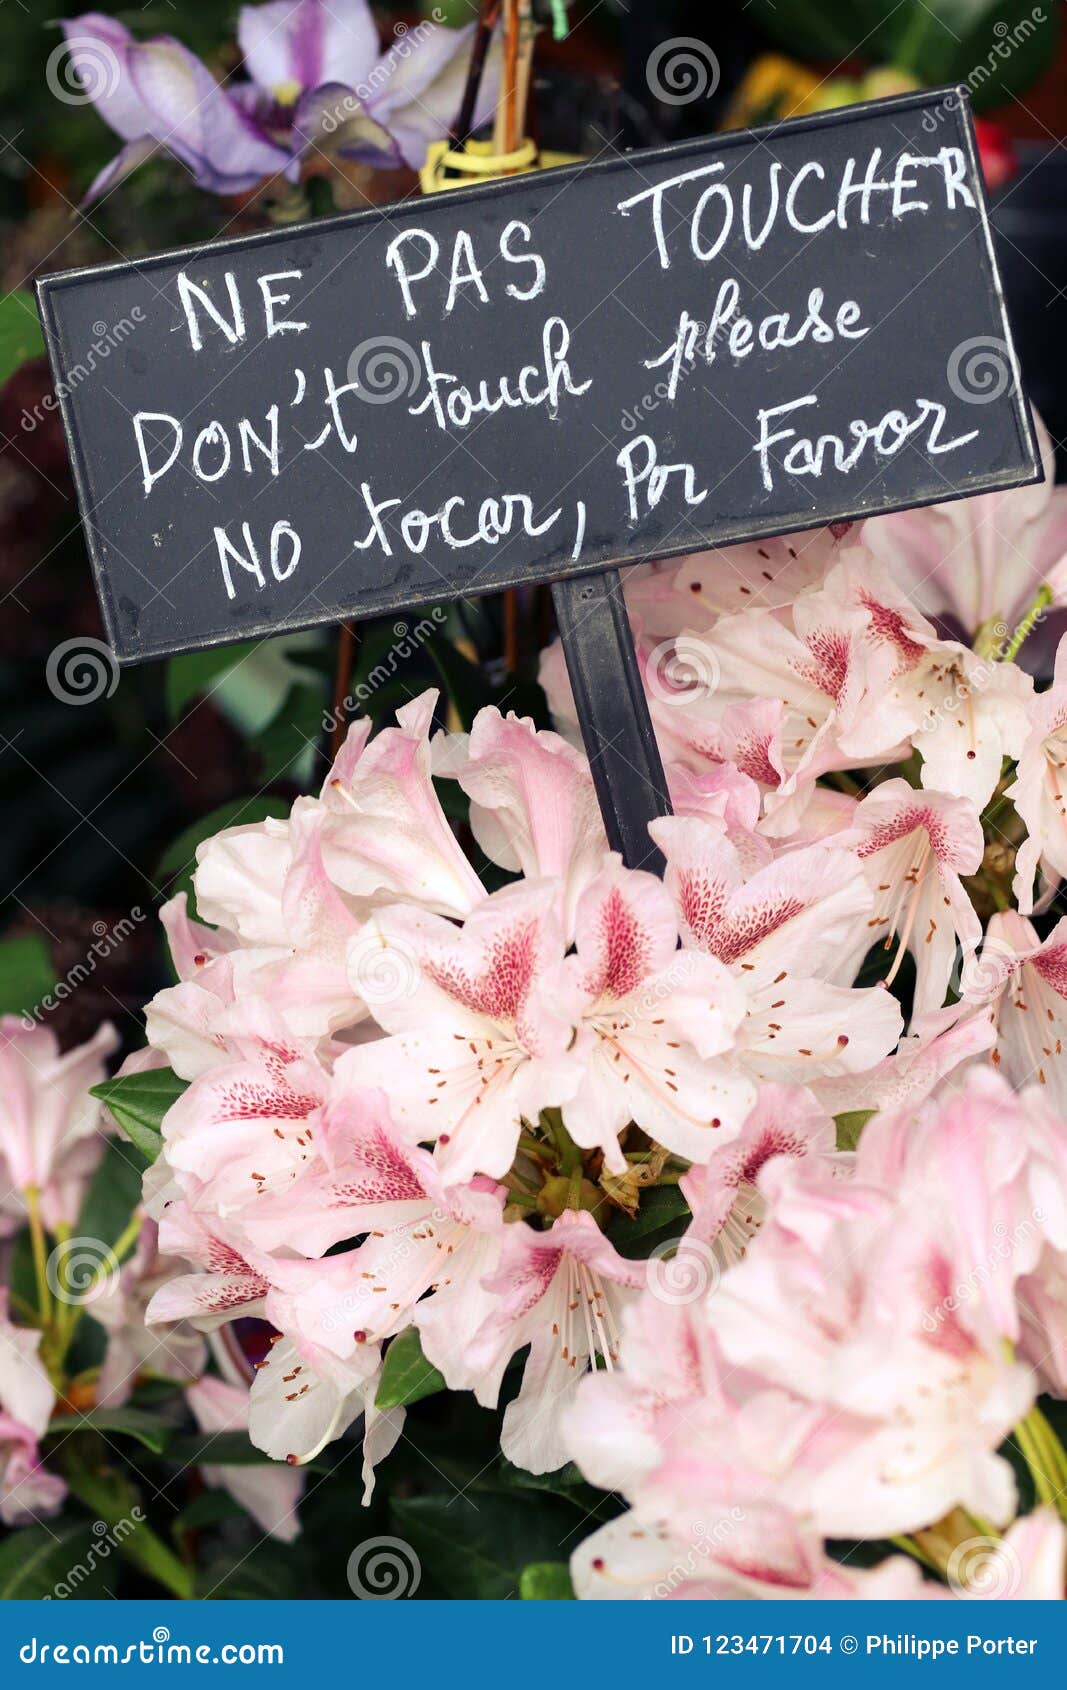 florist shop flowers dont touch sign